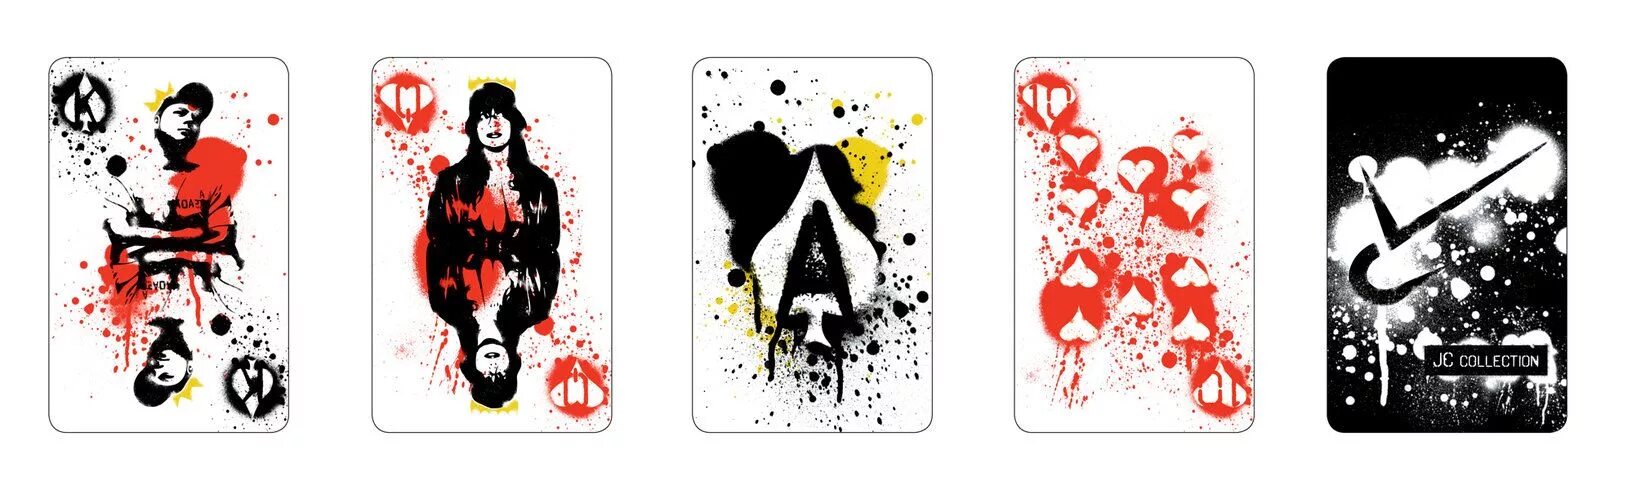 Группа карт. Граффити карты игральные. Граффити игральных карт. Граффити Джокер карта\. Джокер карта Графика.